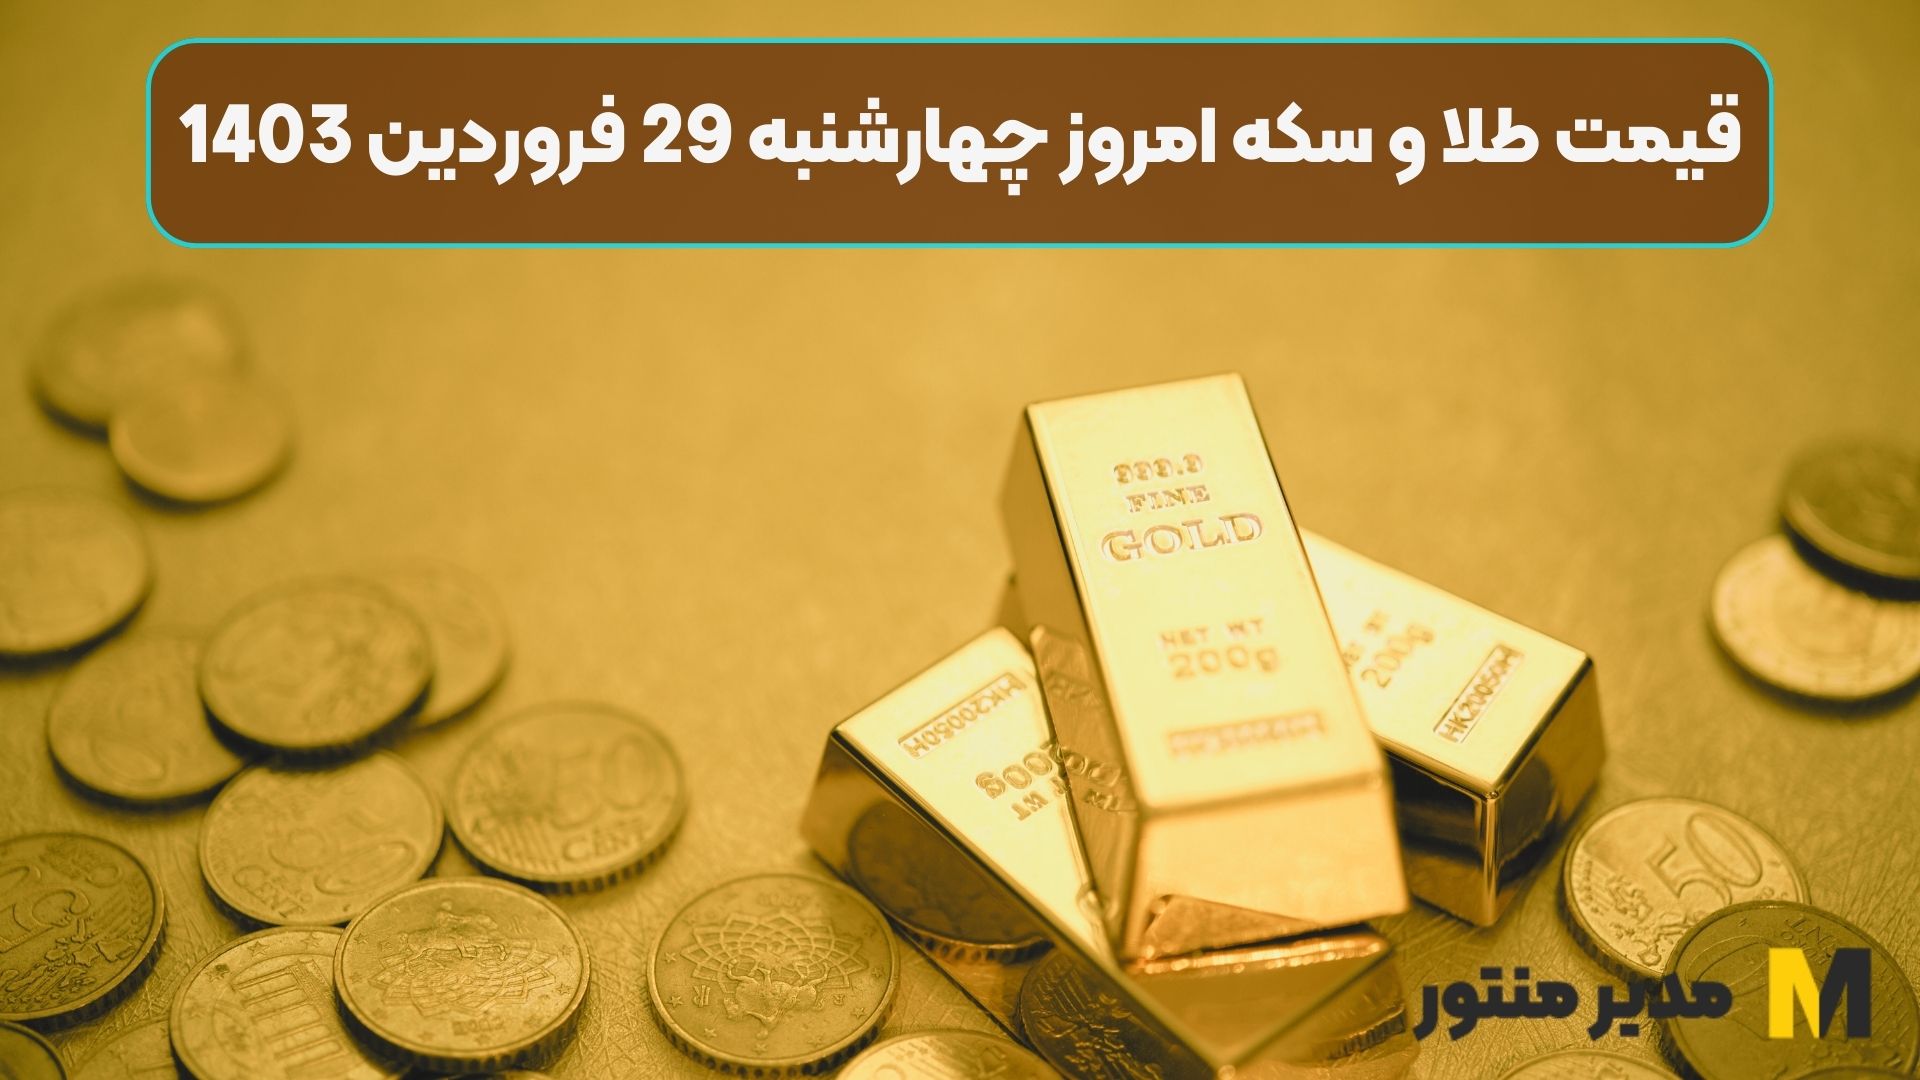 قیمت طلا و سکه امروز چهارشنبه 29 فروردین 1403